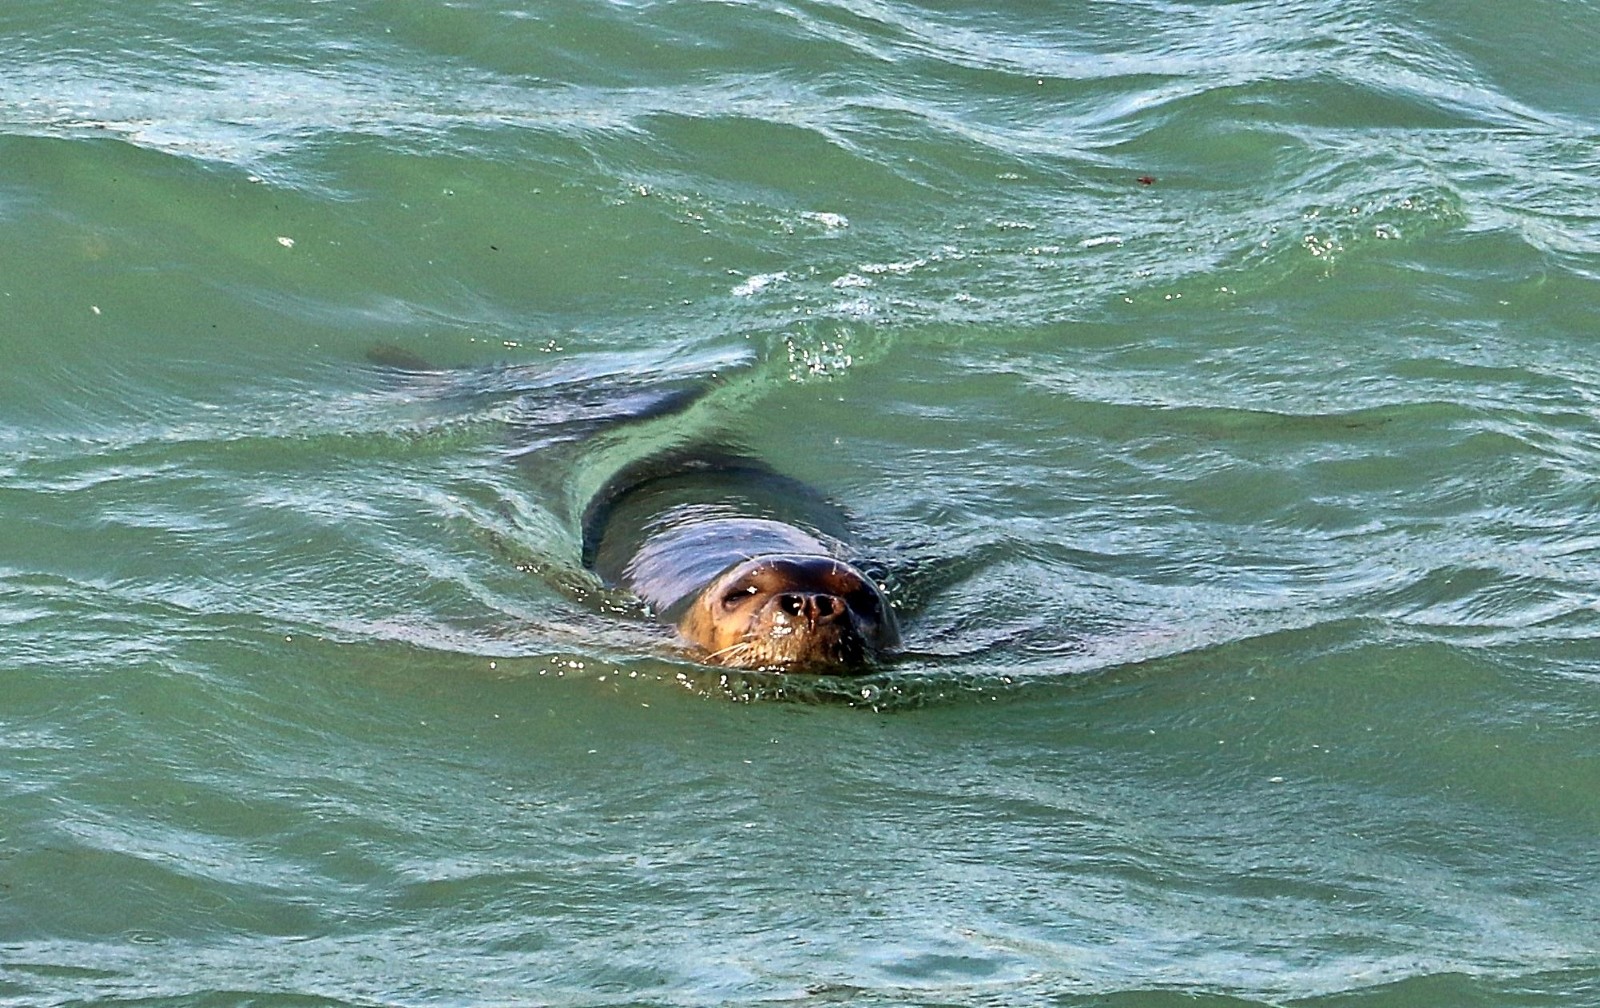 Nesli tükenme tehdidi altındaki Akdeniz foku, Boğaçayı’nda avlanırken objektiflere yakalandı